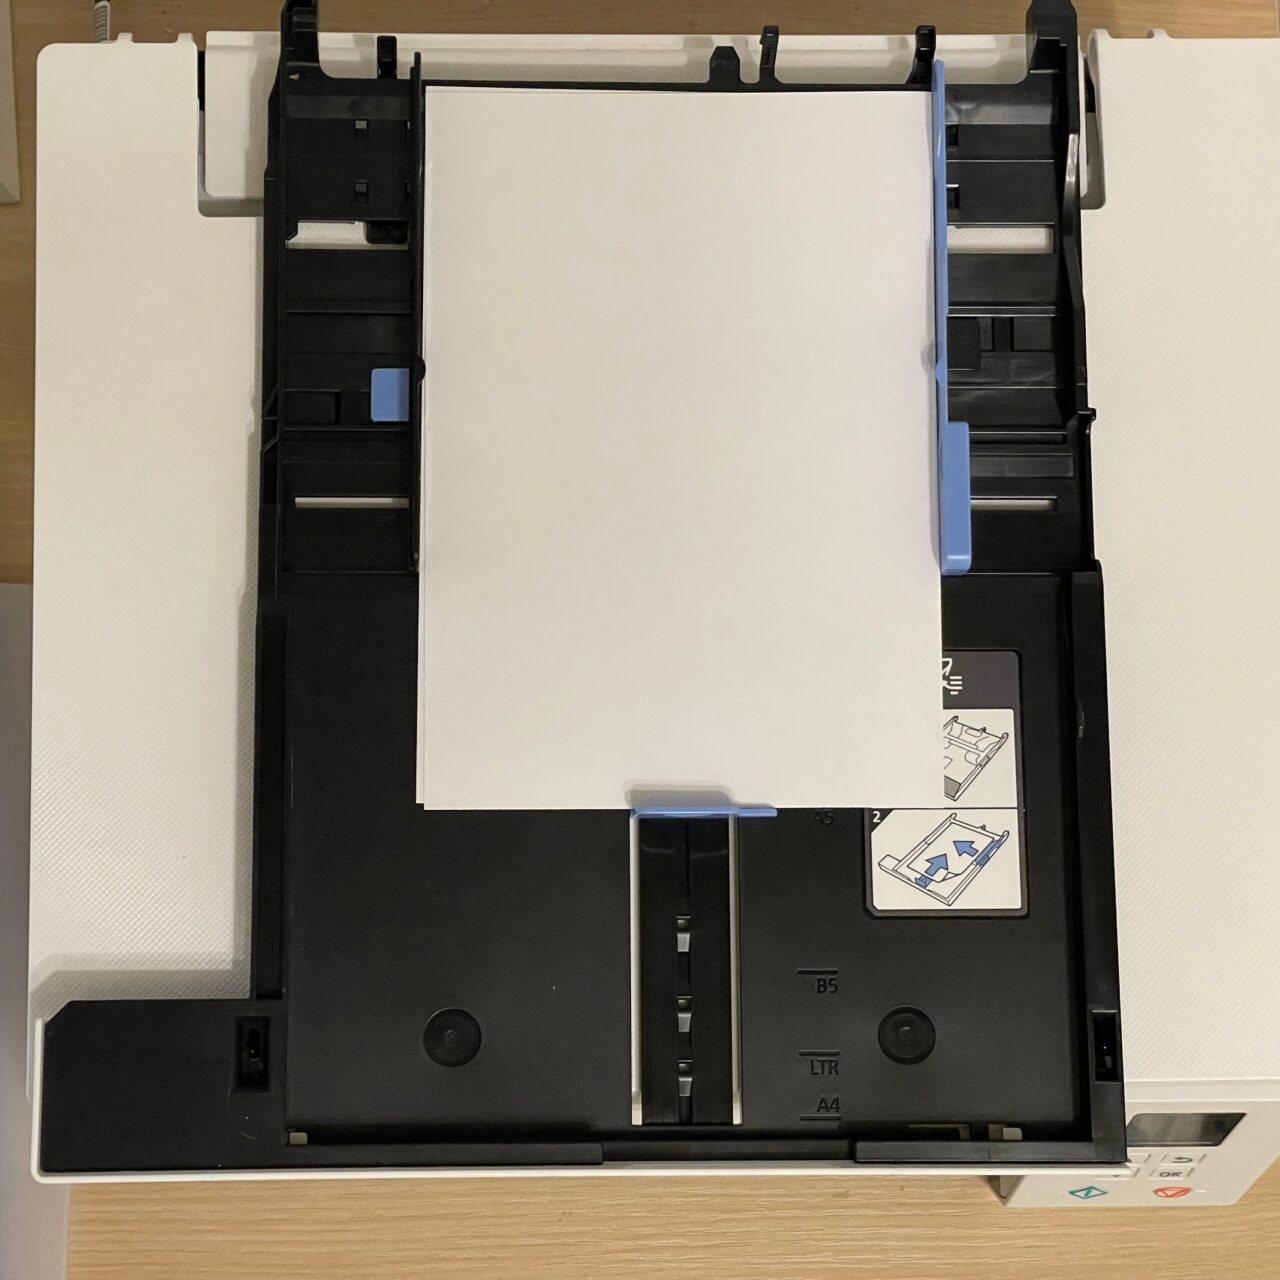 Podajnik papieru drukarki z umieszczonym w nim arkuszem białego papieru formatu A4.